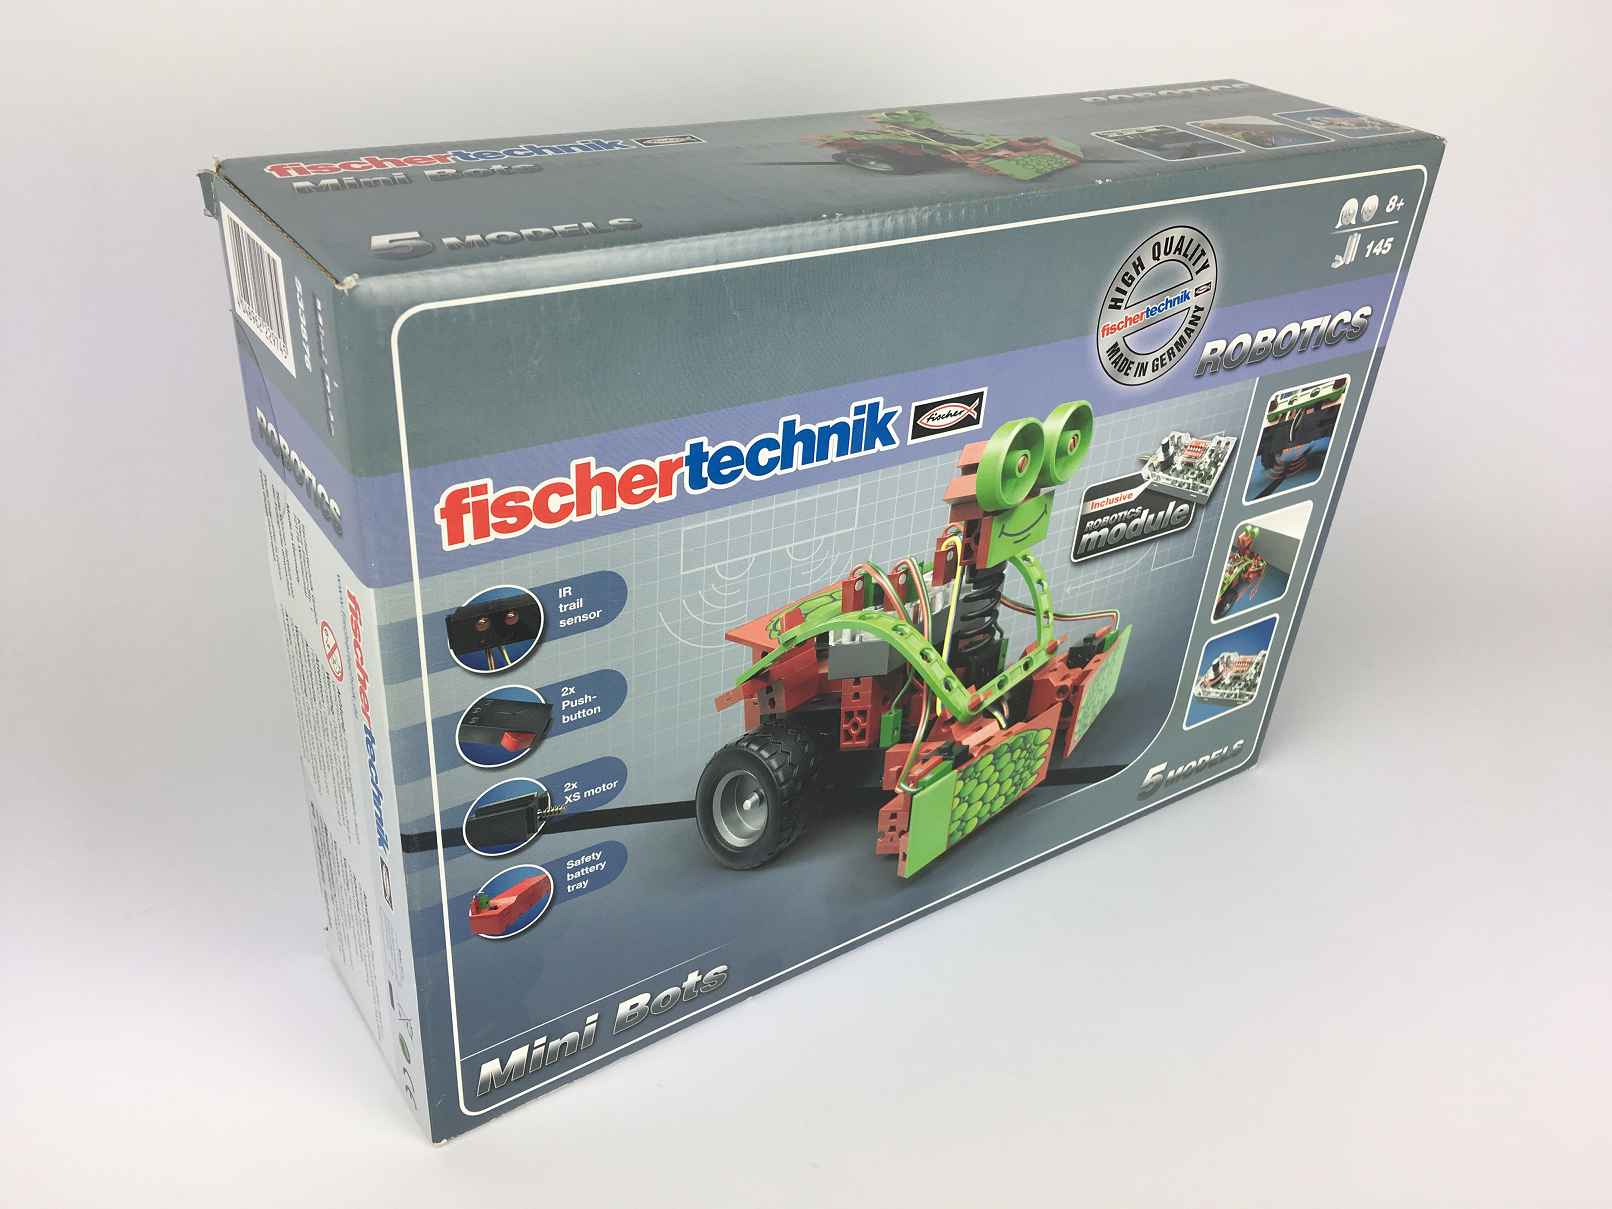 Fischertechnik Robotics-3